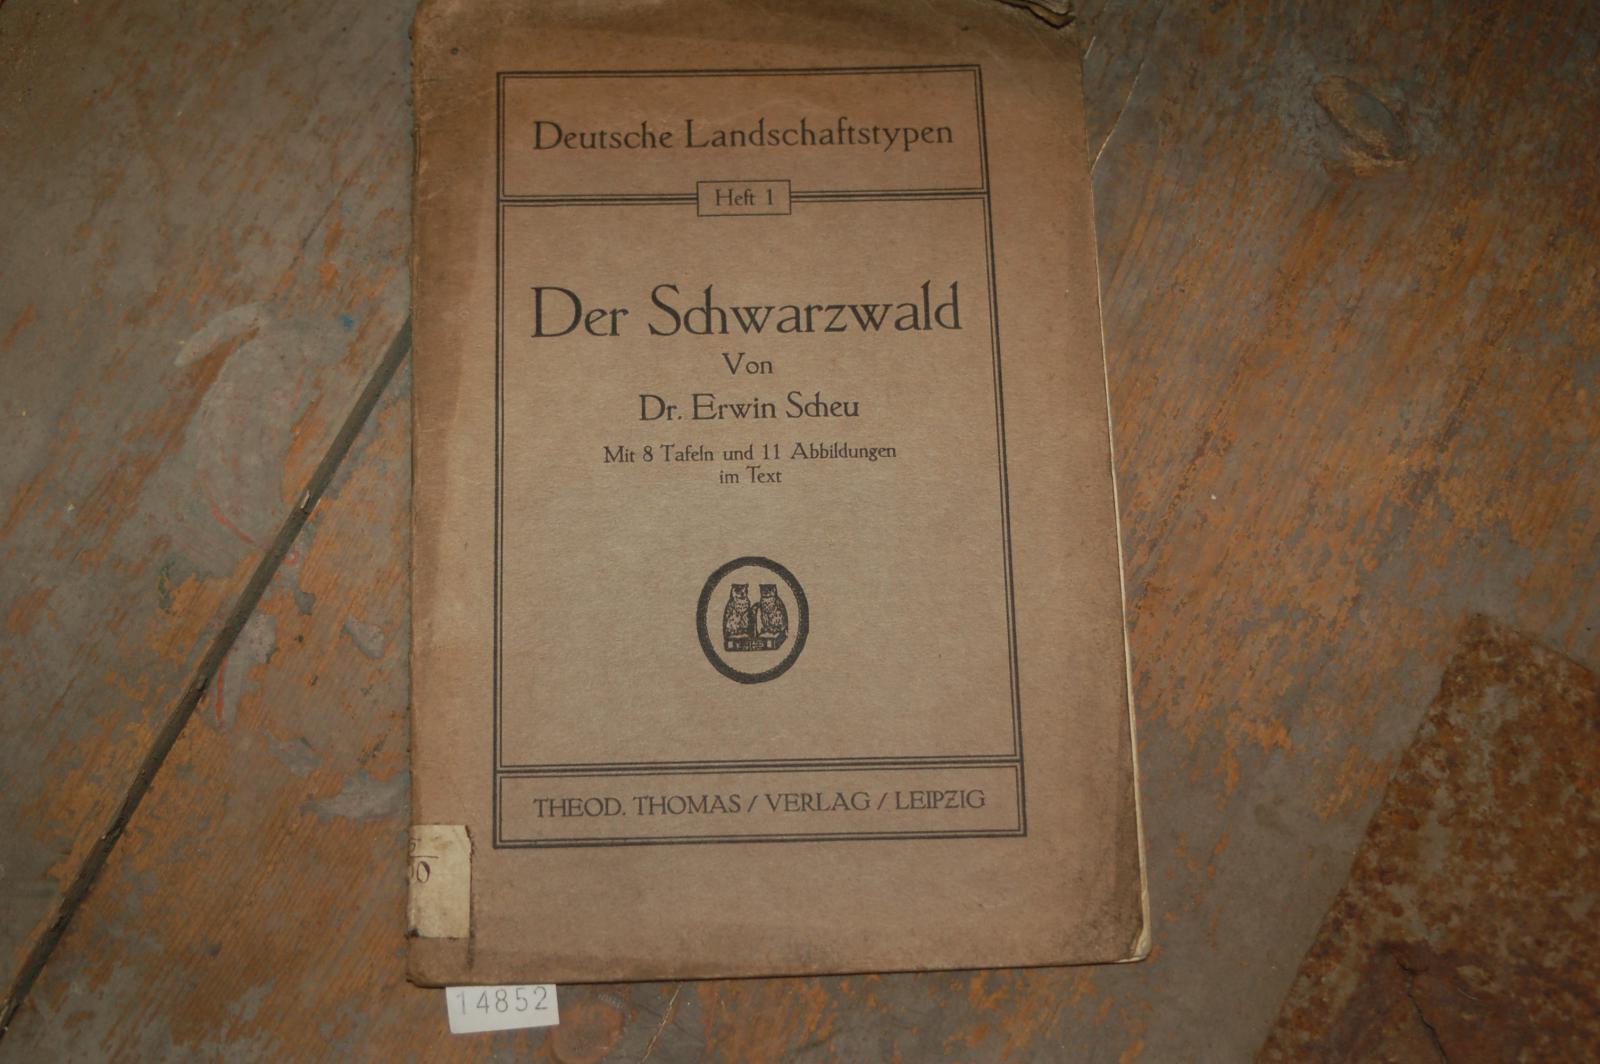 Scheu Dr. Erwin  Der Schwarzwald  Deutsche Landschaftstypen Heft 1 